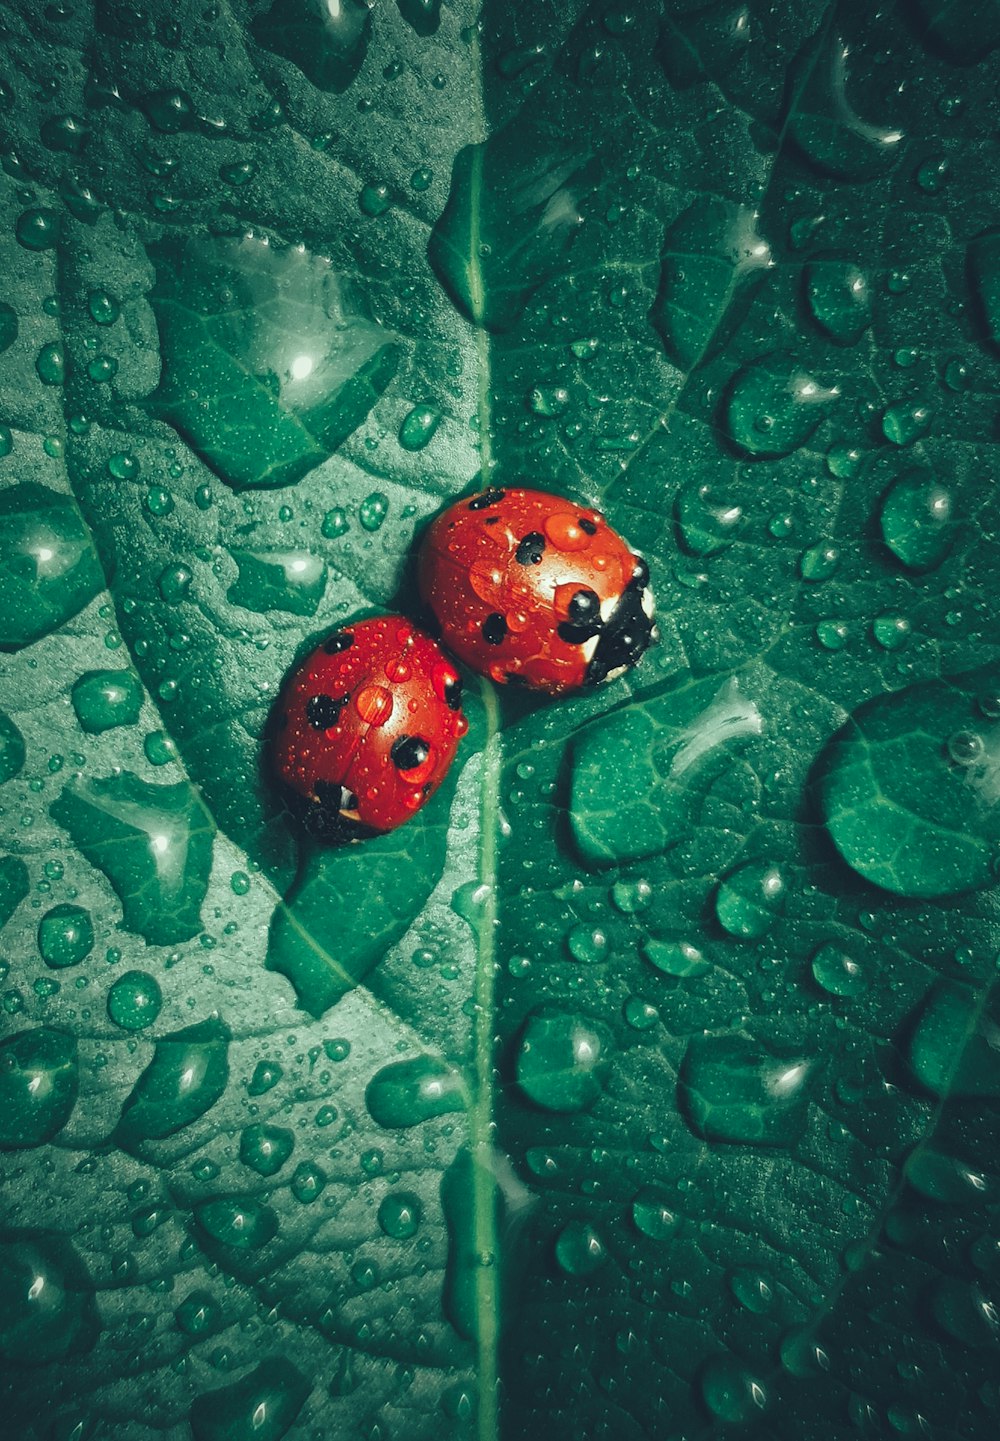 Zwei Marienkäfer sitzen auf einem grünen Blatt mit Wassertröpfchen